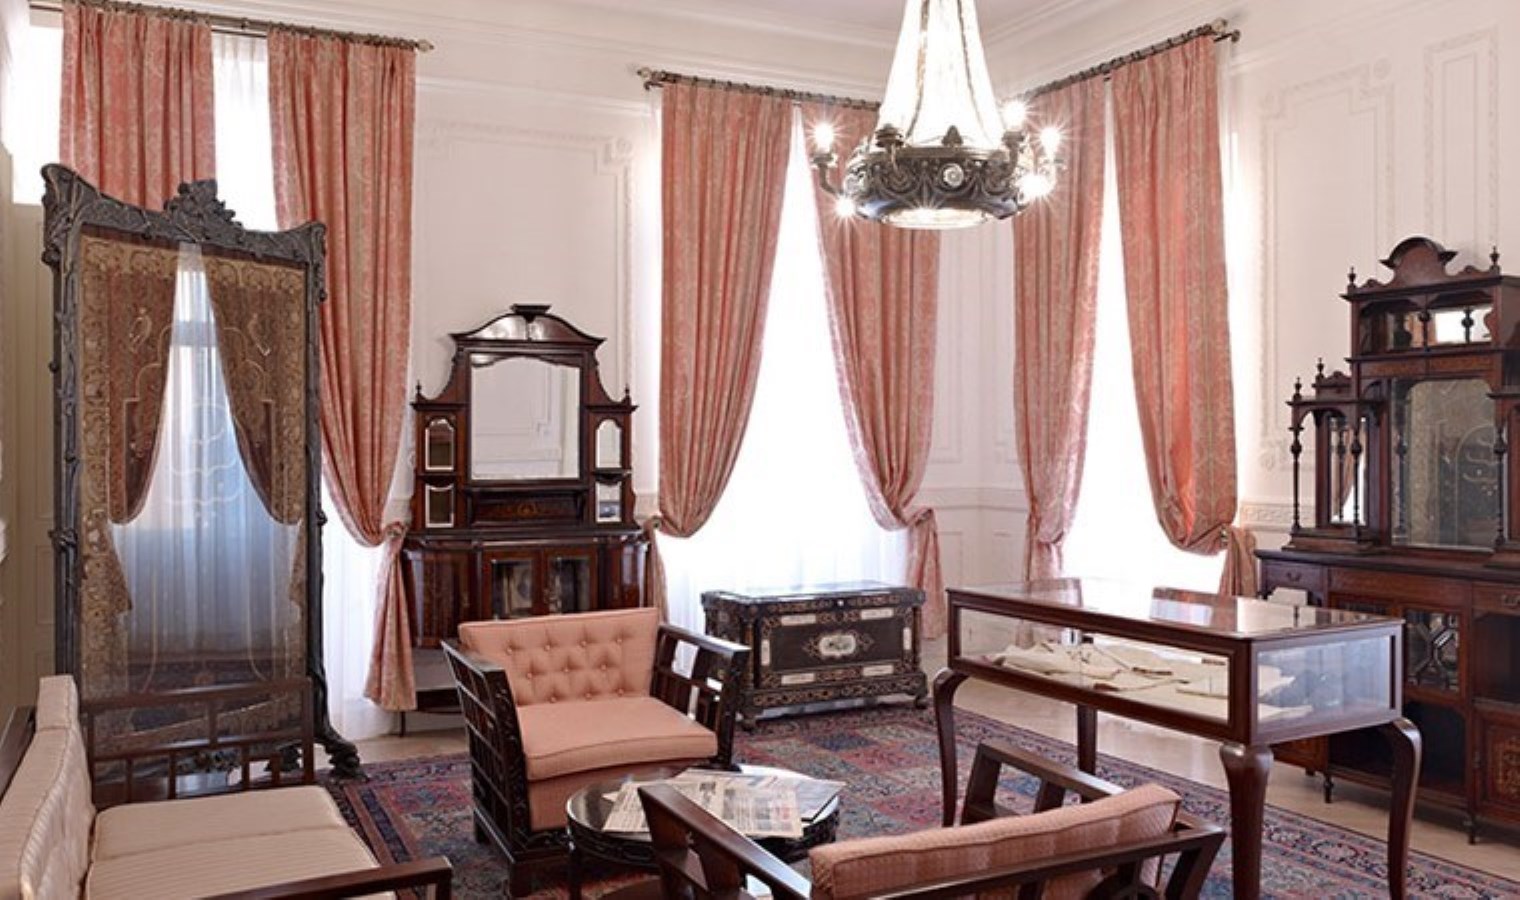 Pera Palace Hotel nerede? Pera Palace Hotel’deki Atatürk Müze Odası ziyarete açık mı? 101 numaralı odanın hikayesi…